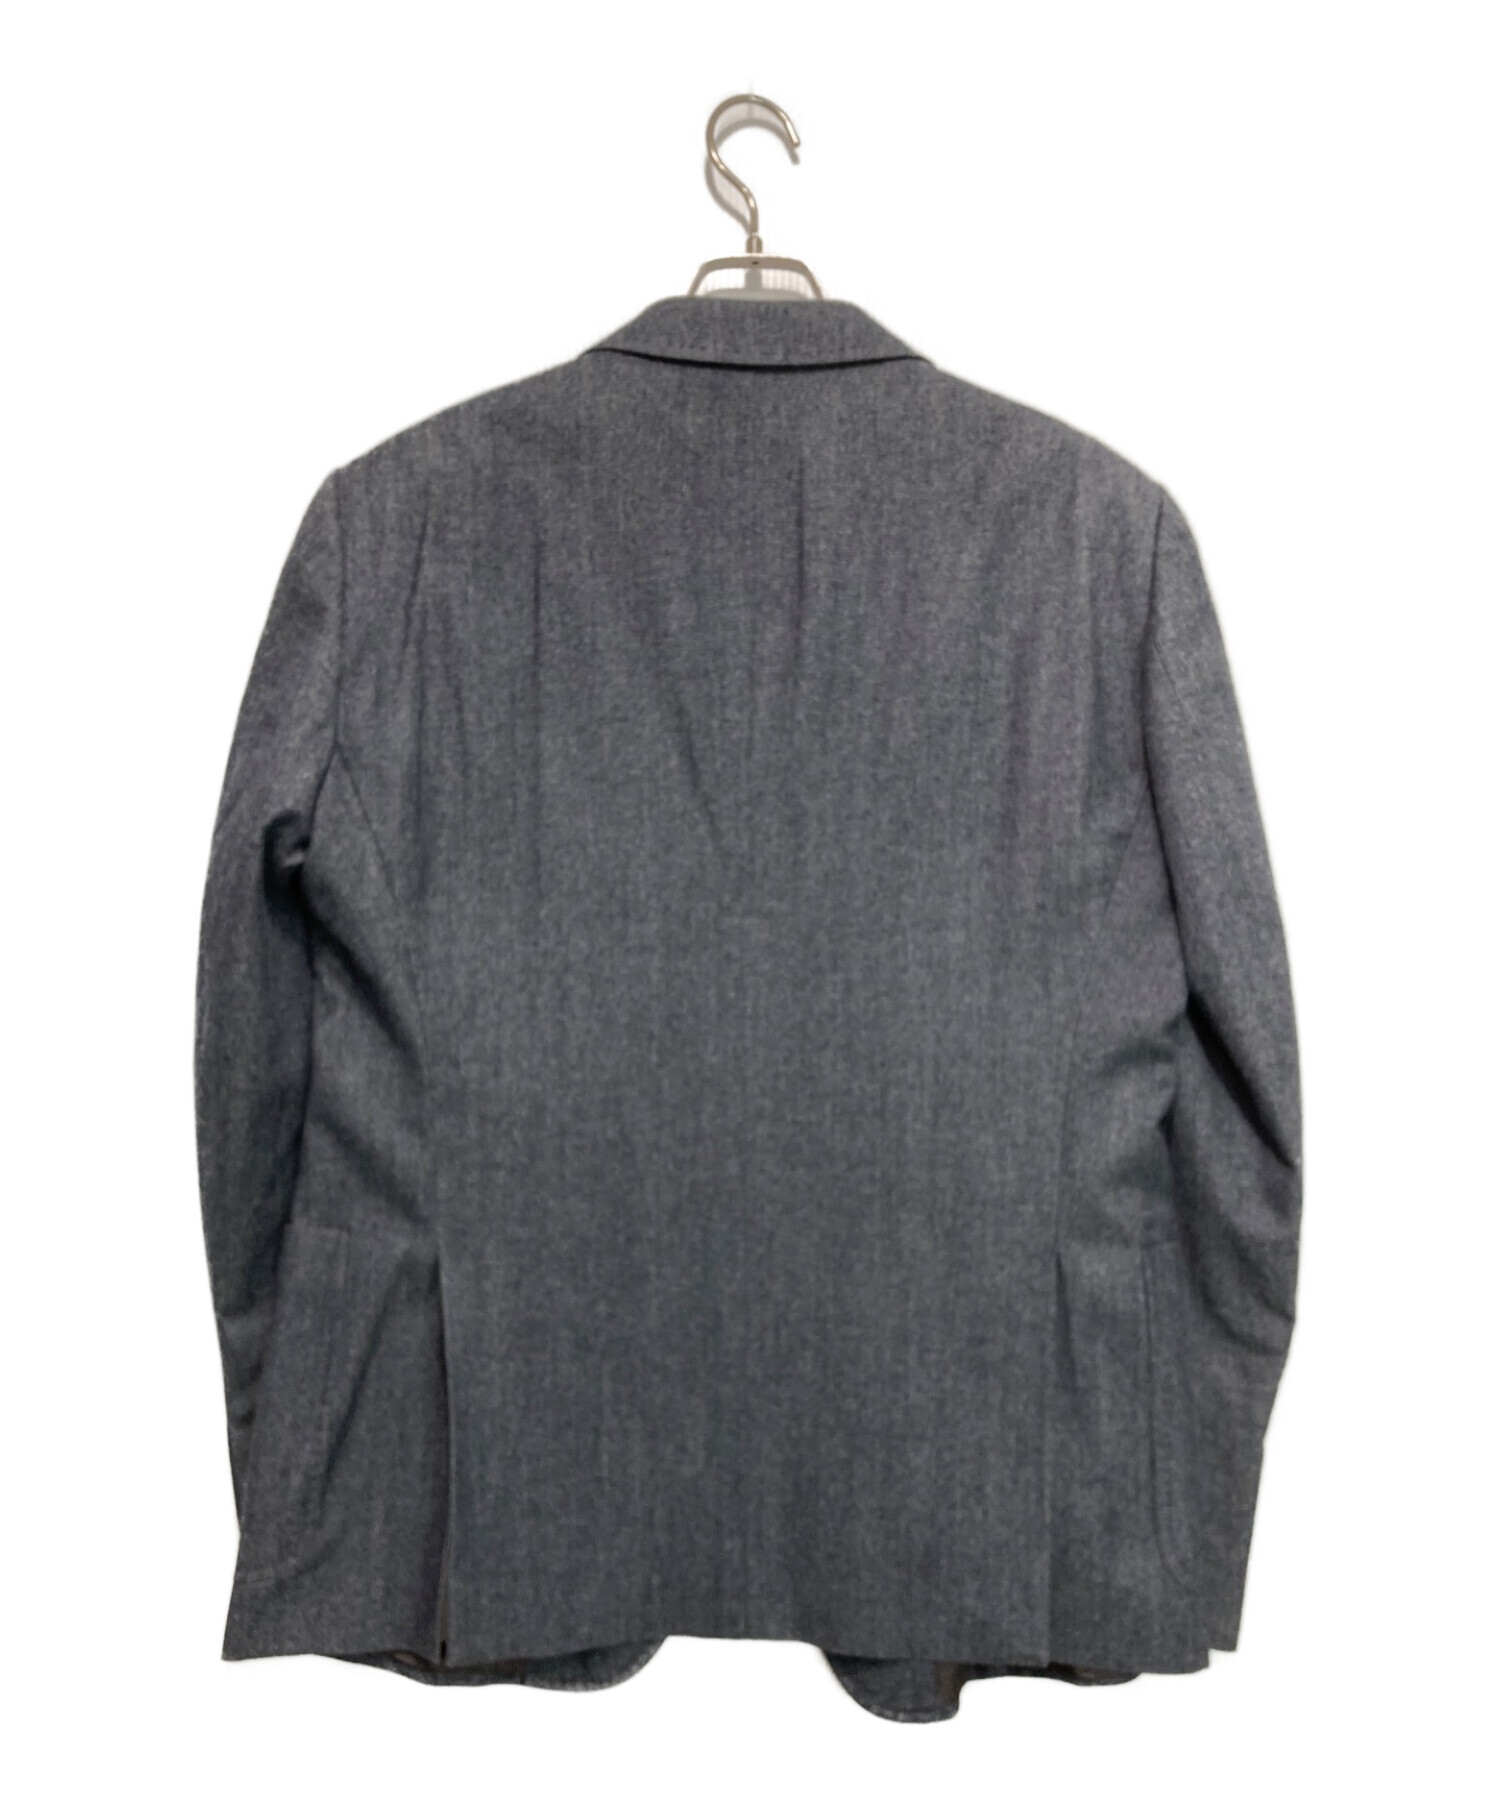 ARMANI COLLEZIONI (アルマーニ コレツィオーニ) テーラードジャケット ネイビー サイズ:52